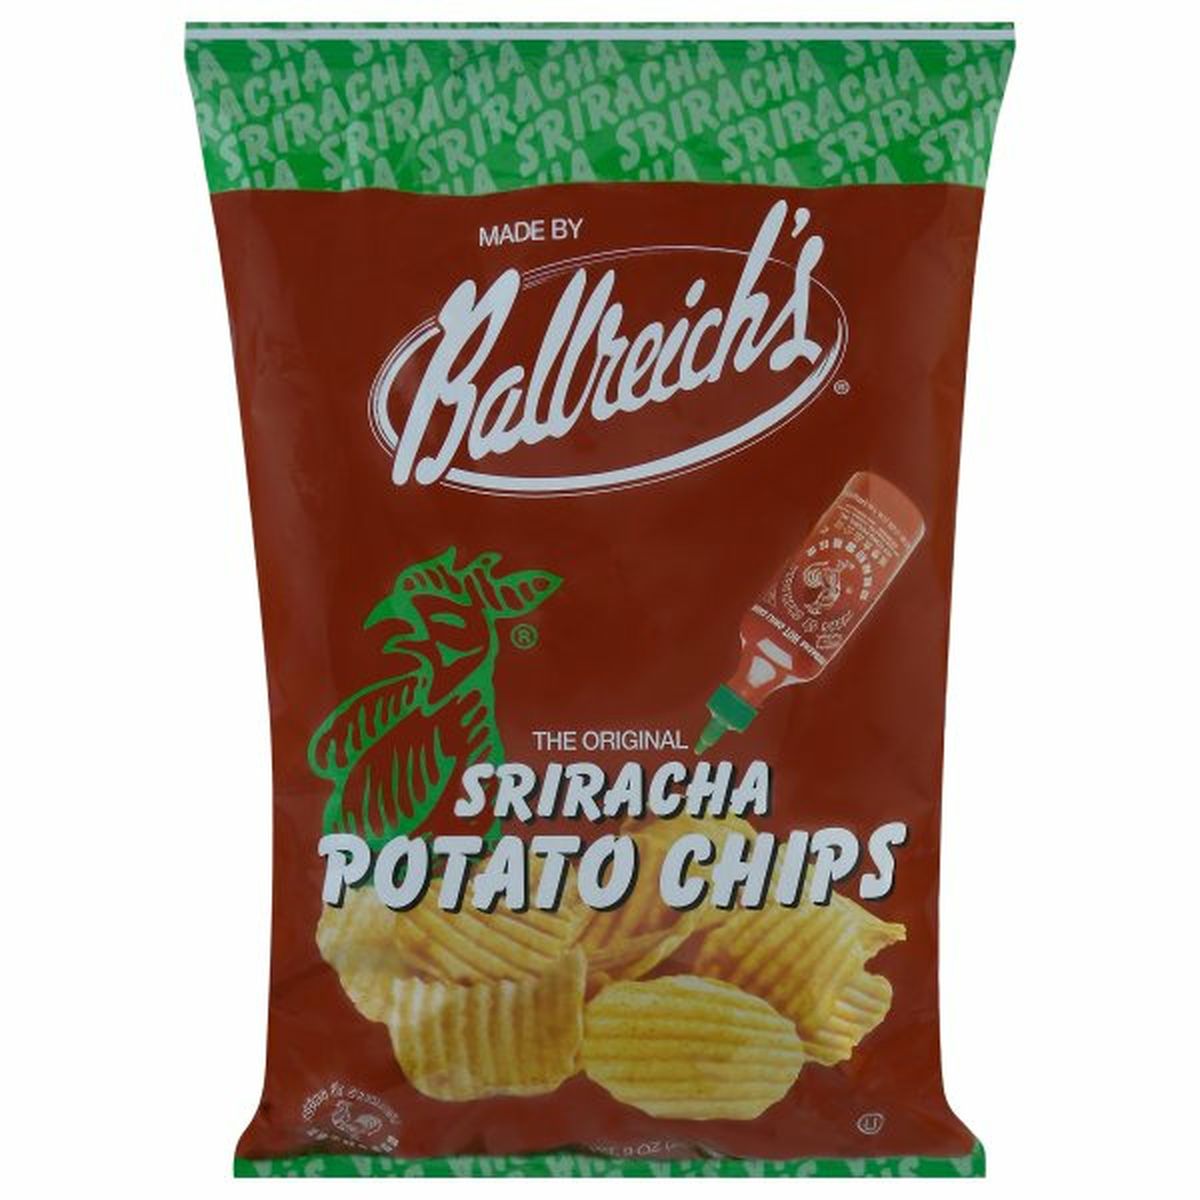 Calories in Ballreich's Potato Chips, Sriracha